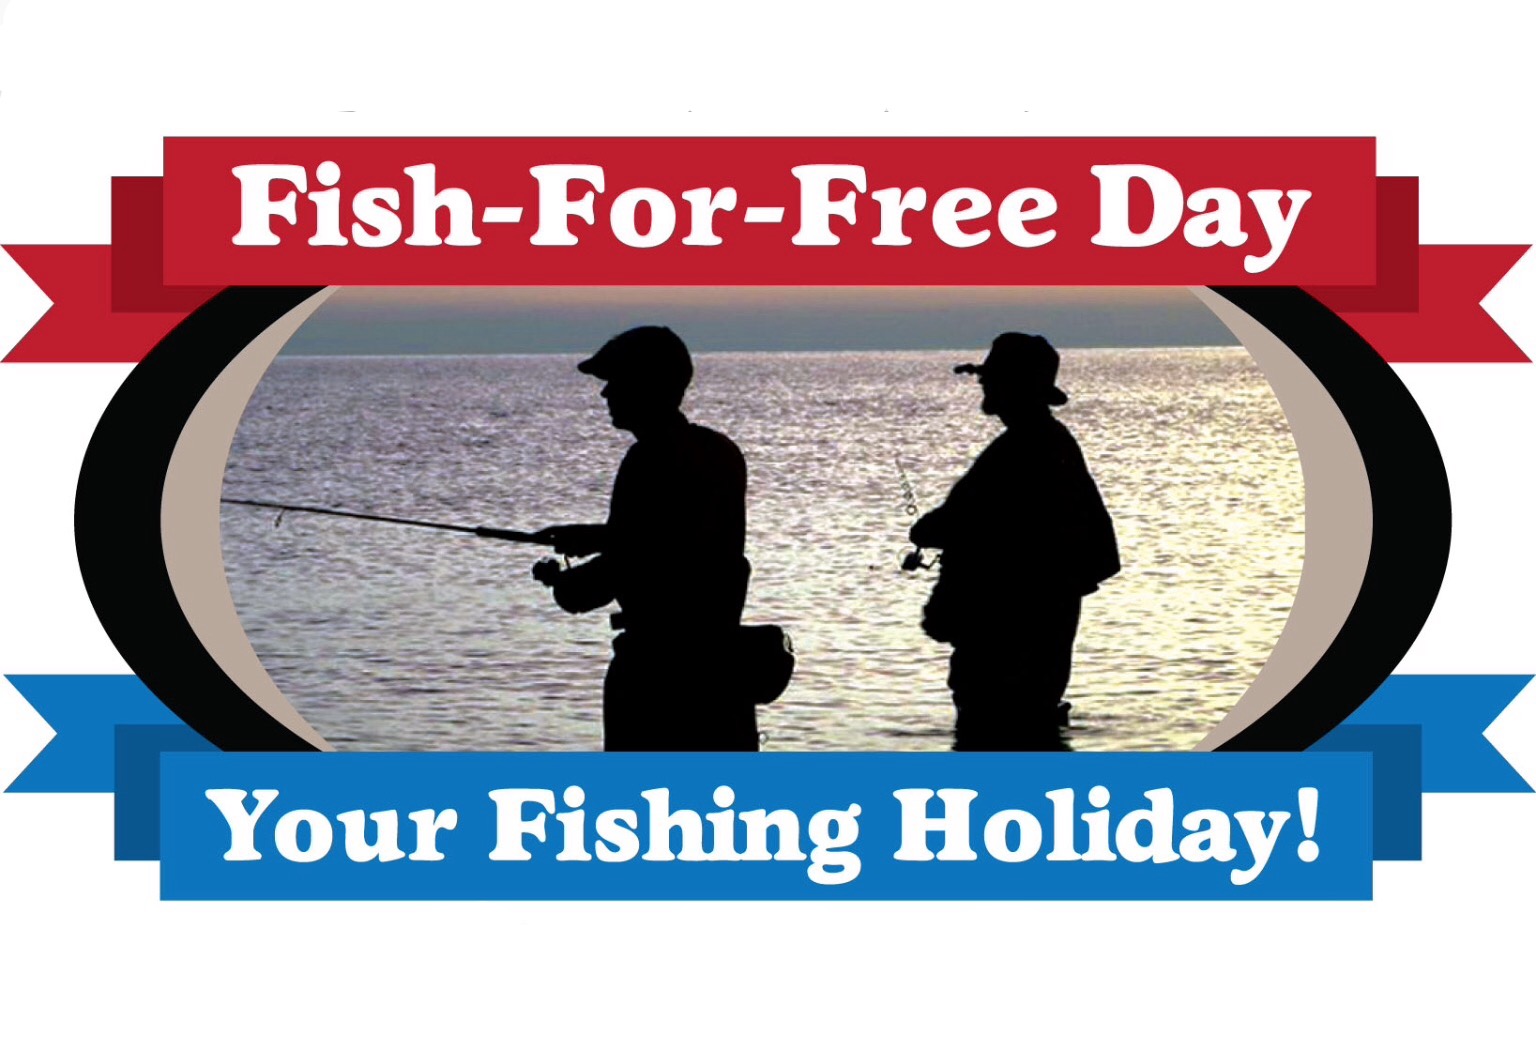 Pennsylvania FishforFree Days May 29 & July 4 SHIP SAVES